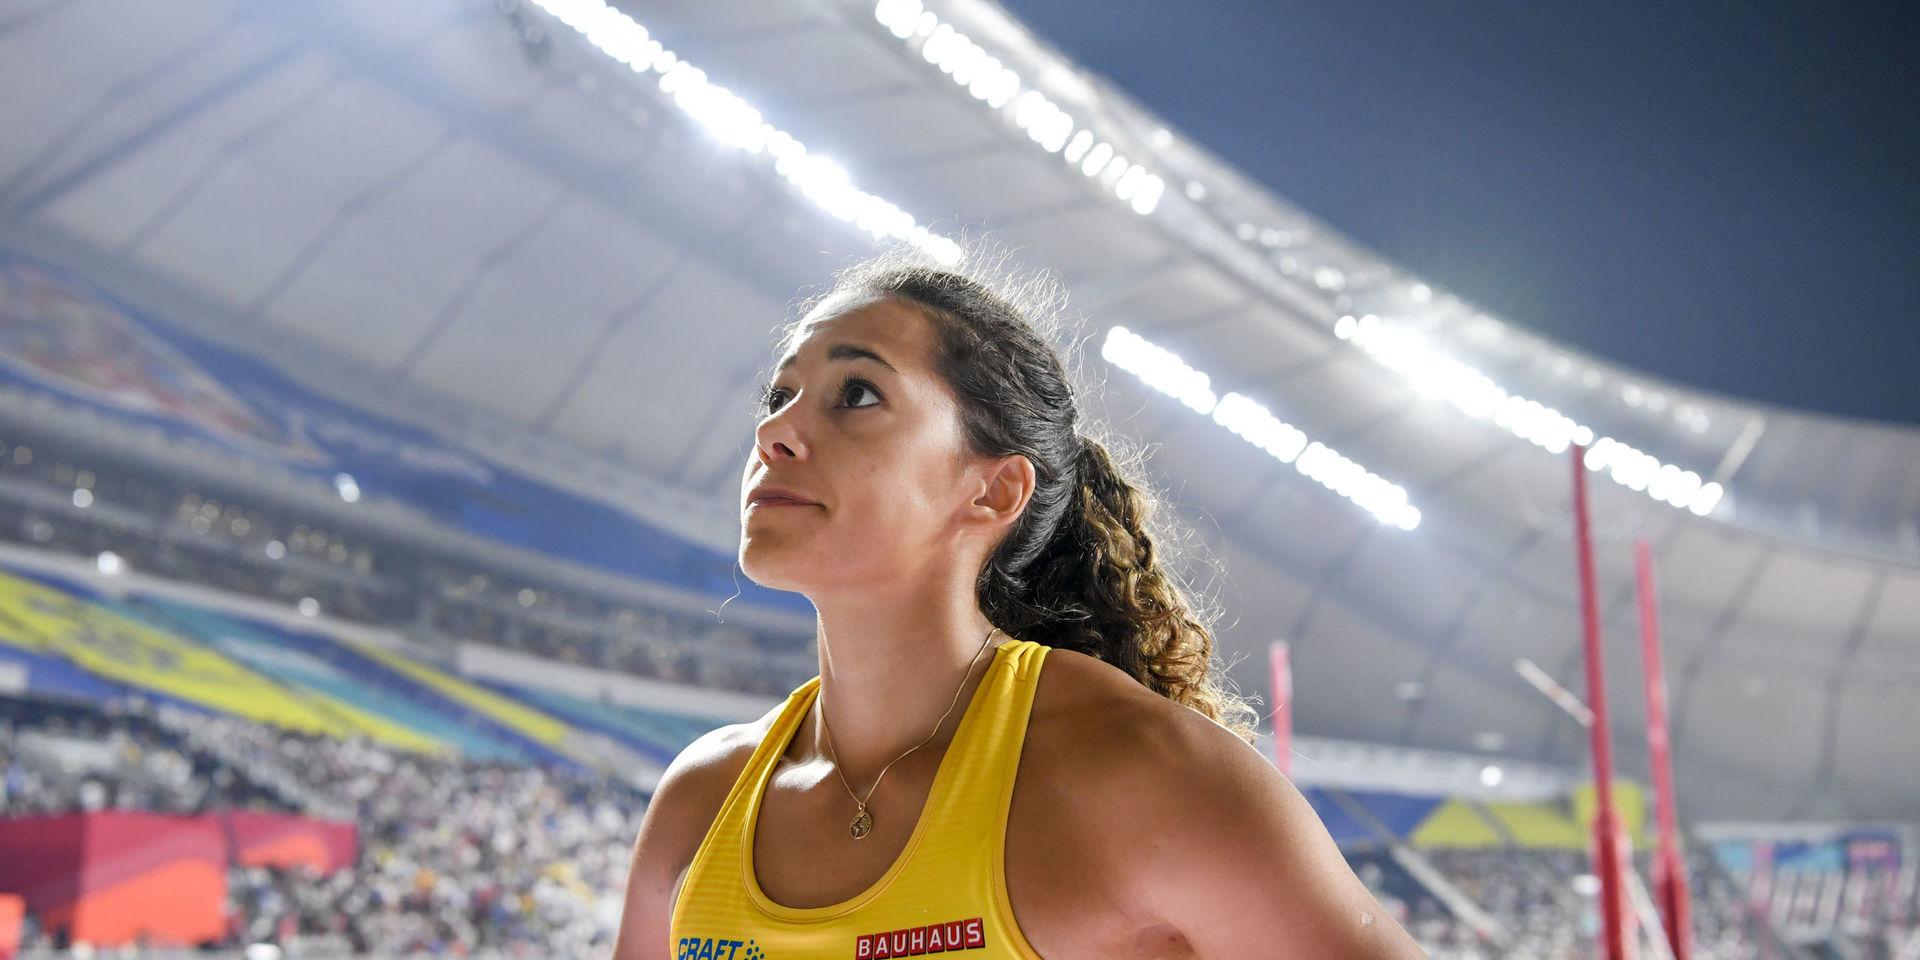 Angelica Bengtsson på Khalifastadion i Doha där hon slutade sexa i stavhoppsfinalen efter att ha tagit 4,80 och satt svenskt rekord.